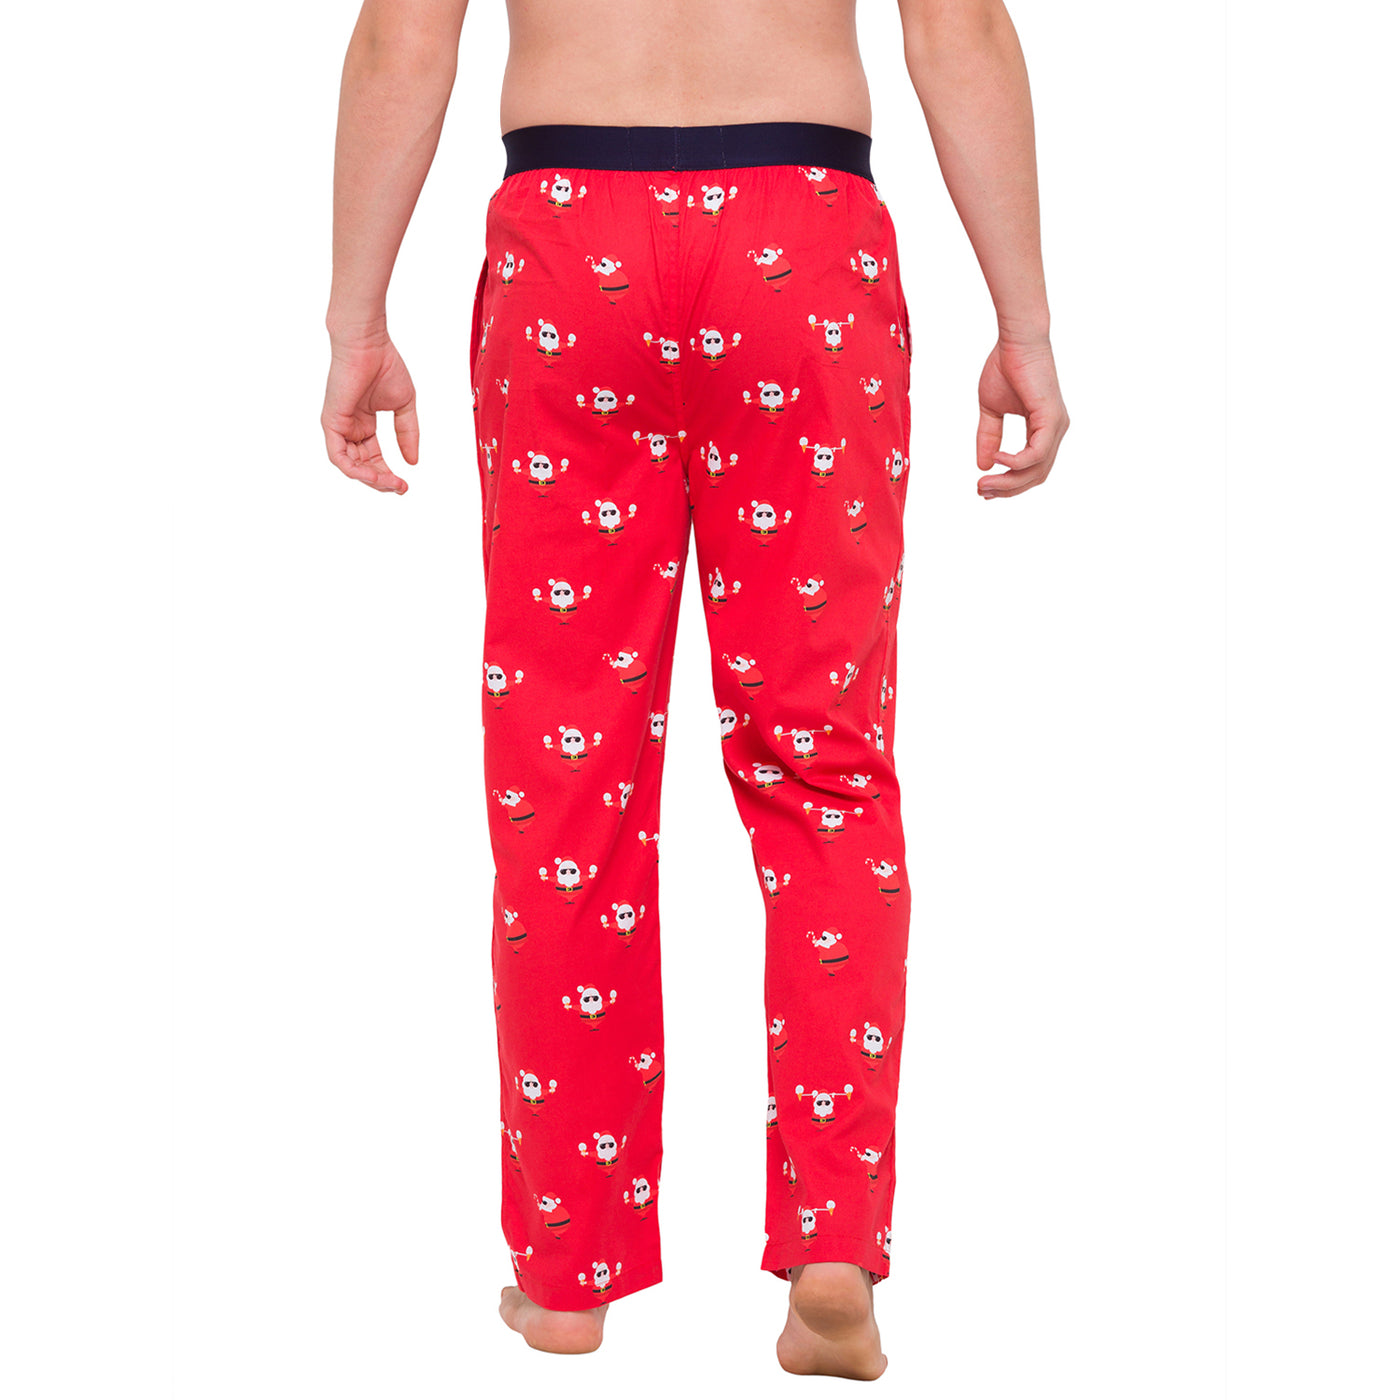 It's Christmas Santa, Men X'Mas Pajama